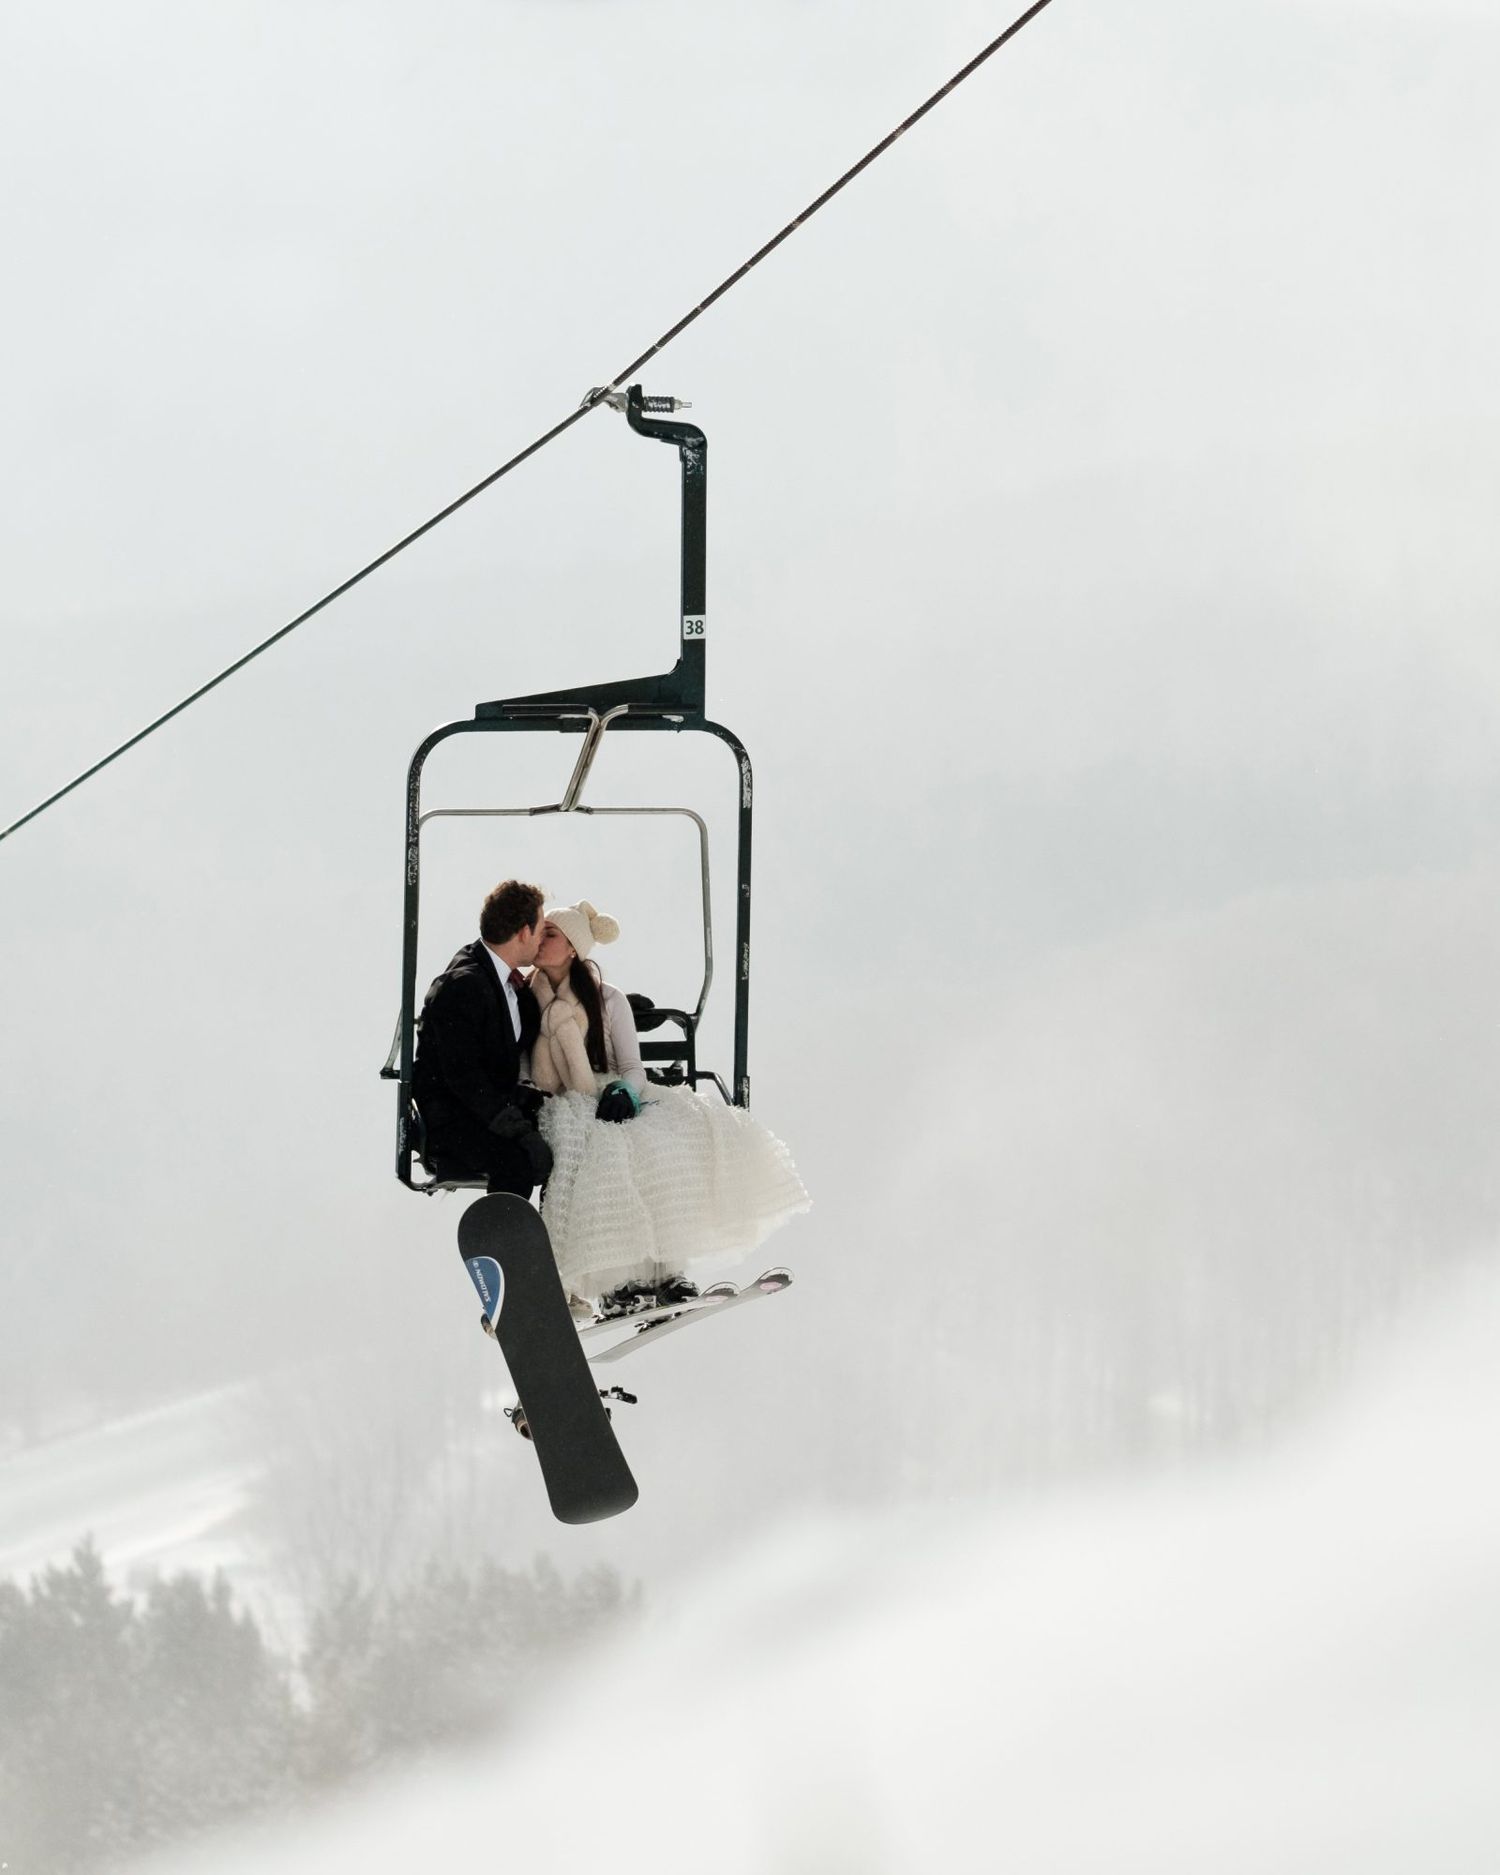 lauren and christian kissing on ski lift